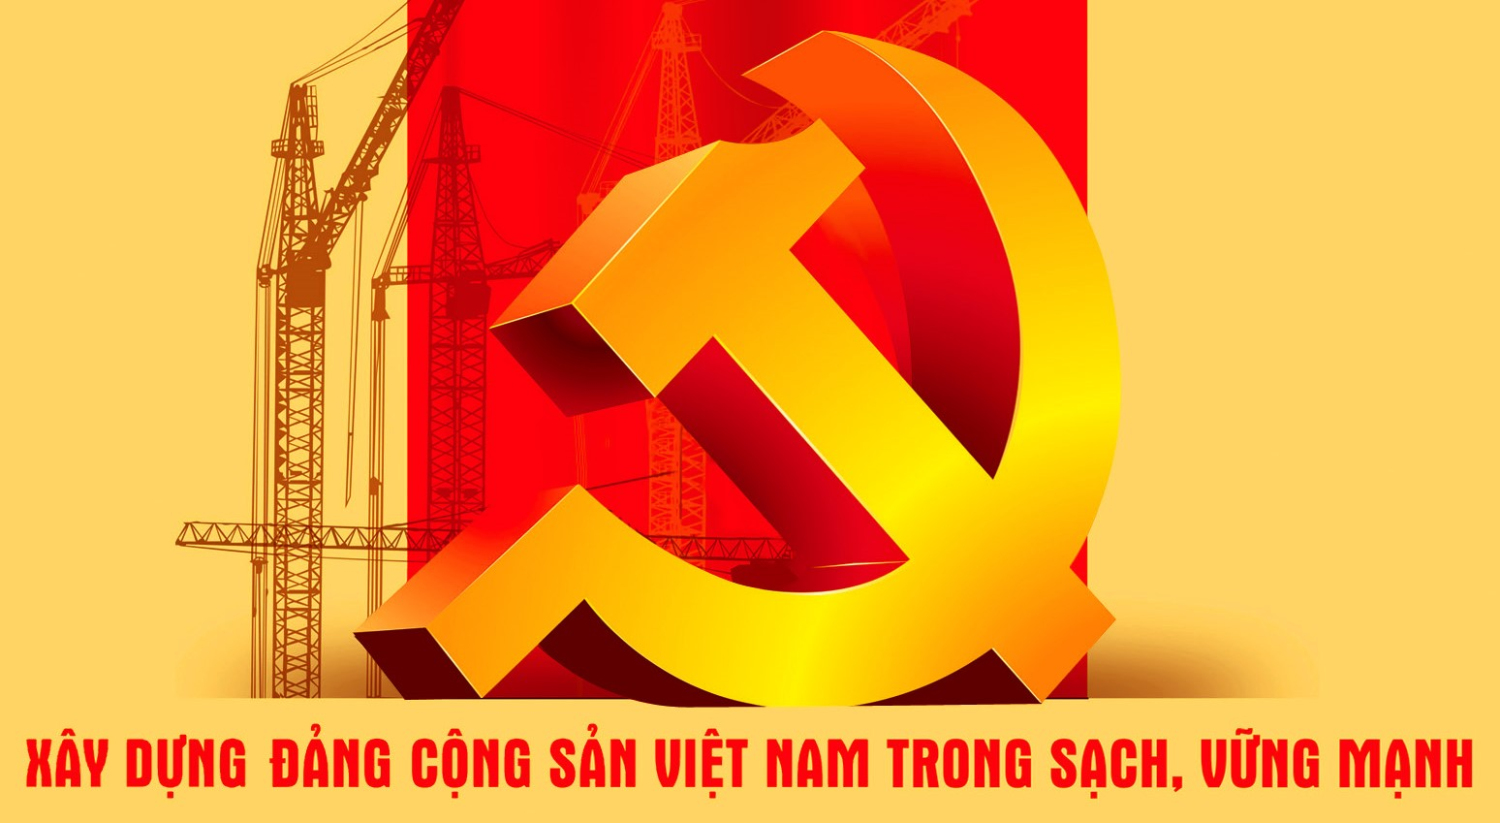 Sự phát triển nhận thức của Đảng Cộng sản Việt Nam về chuẩn mực đạo đức cách mạng của cán bộ, đảng viên